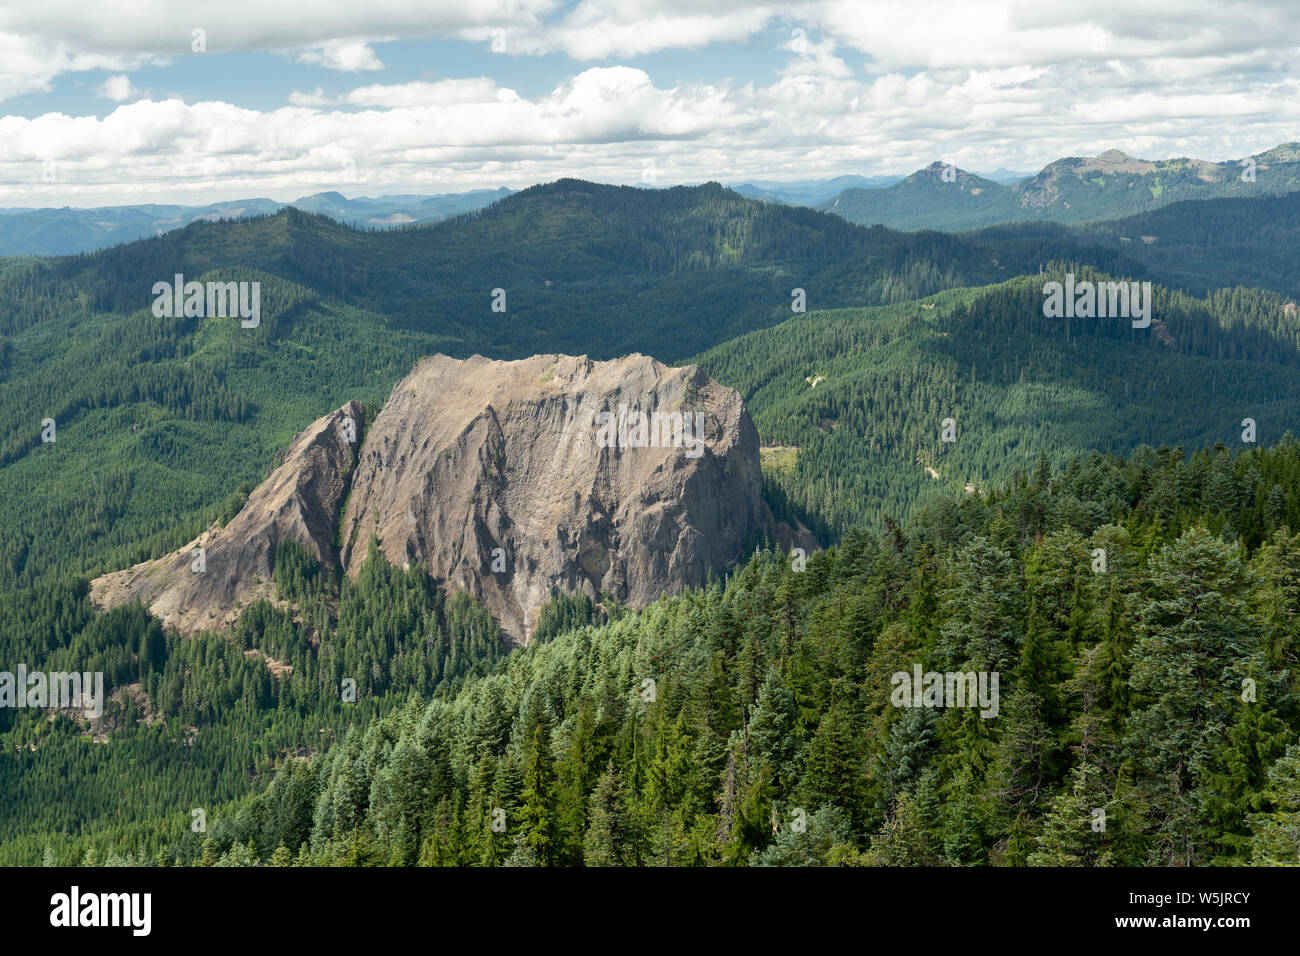 Monolithe de roche ignée intrusive --1200 pieds de haut Wolf Rock dans l'ouest de l'Oregon Cascades, USA Banque D'Images